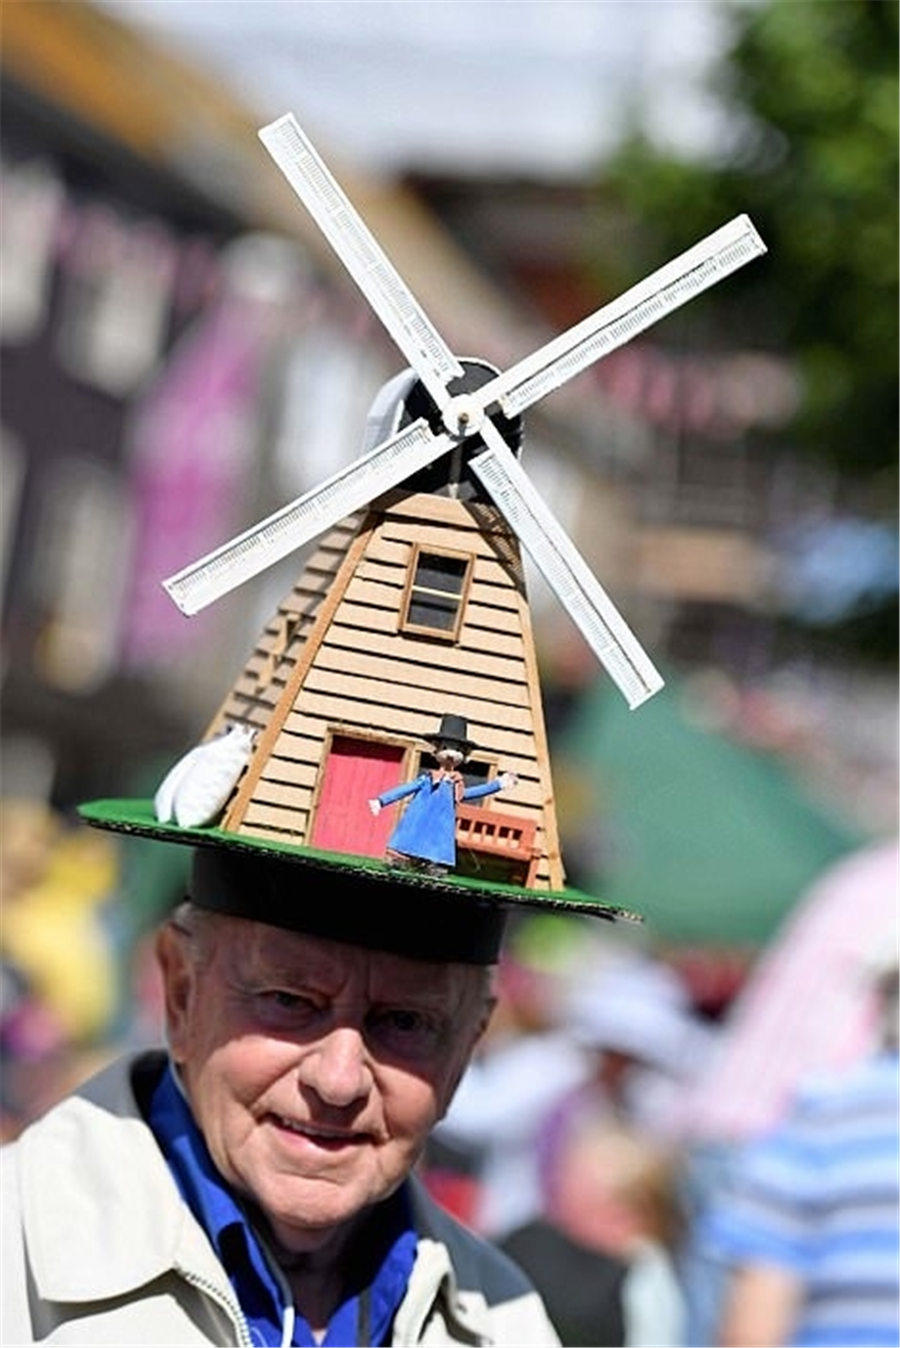 ユニークなデザインの帽子が集まる「ハット・フェスティバル」　英国